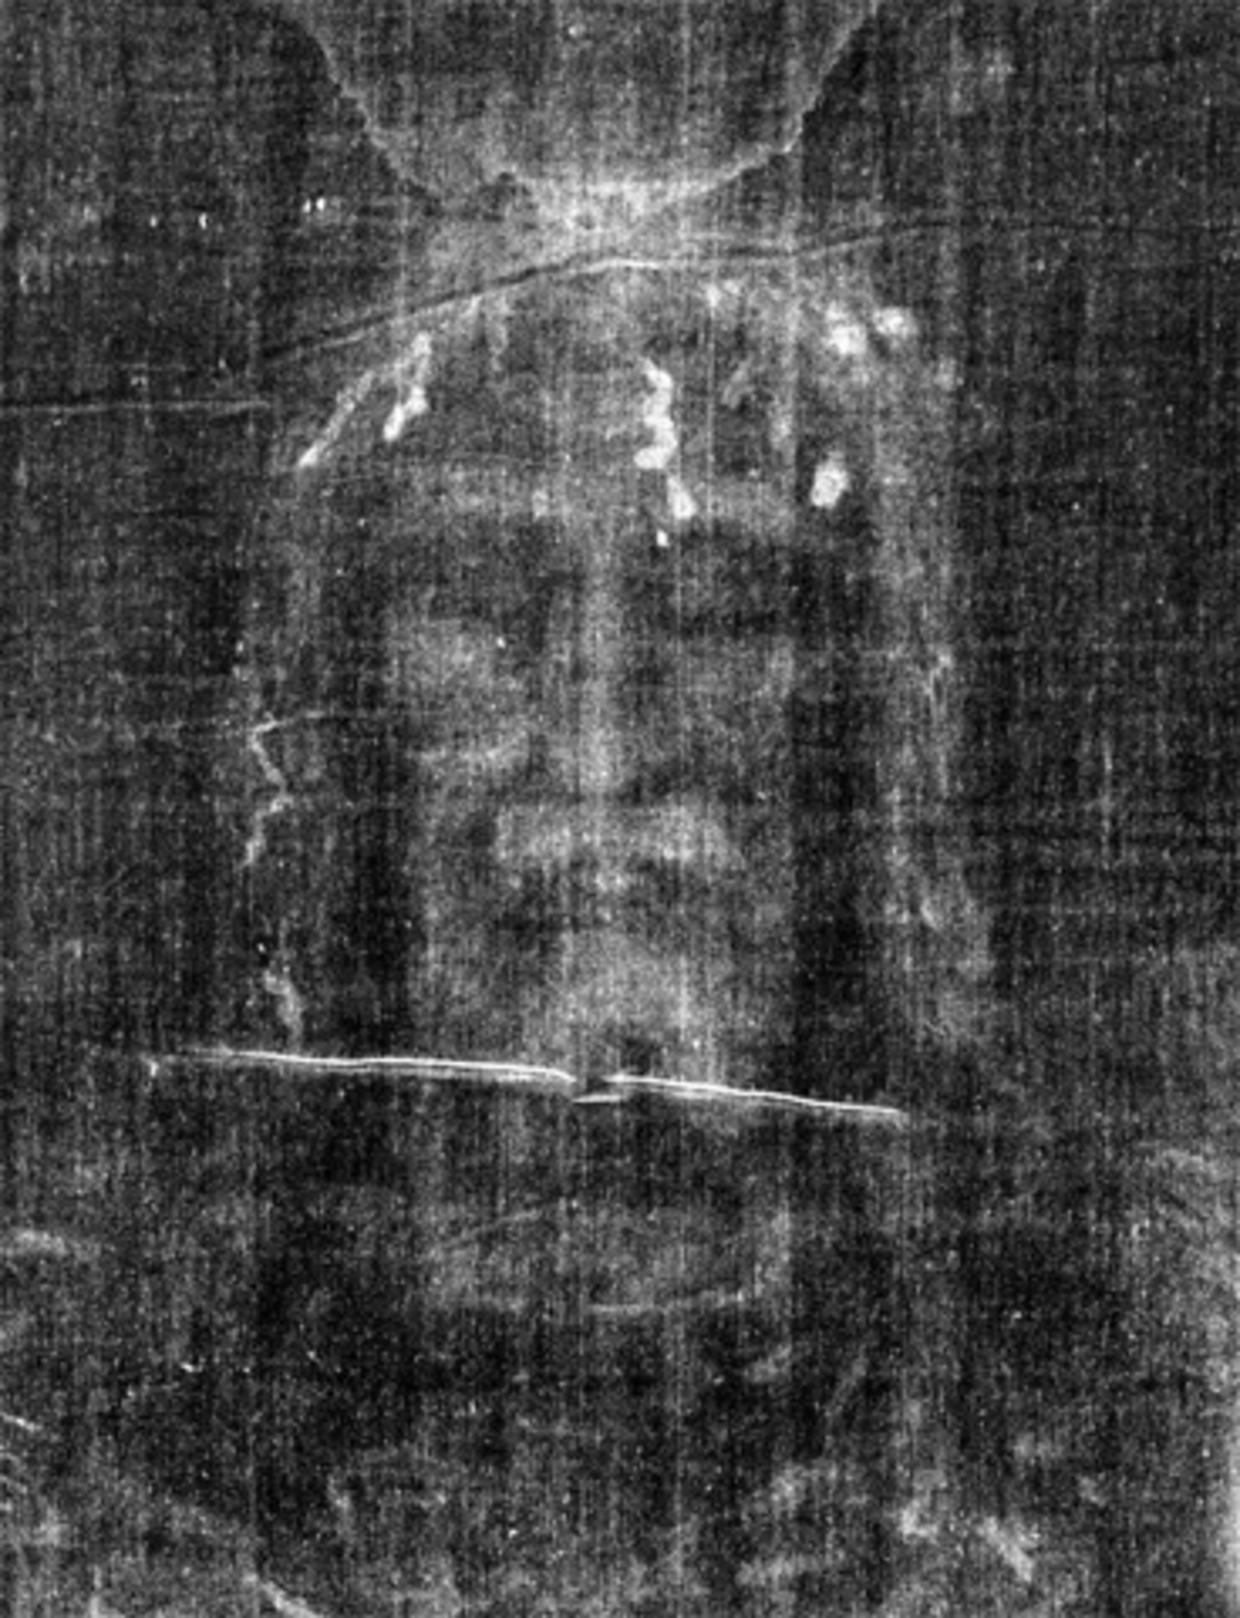 face of jesus shroud of turin